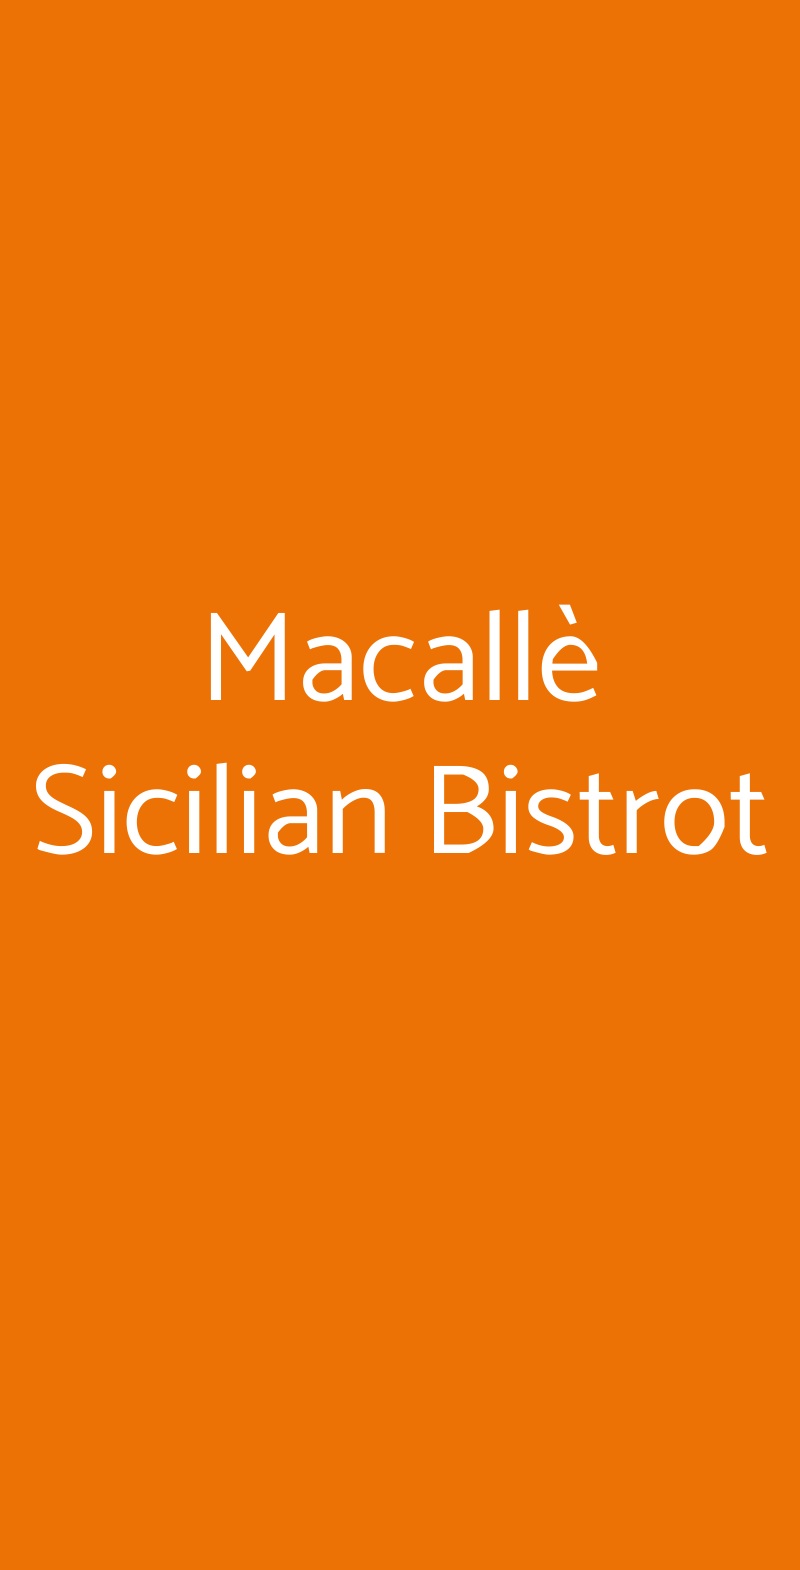 Macallè Sicilian Bistrot Siracusa menù 1 pagina